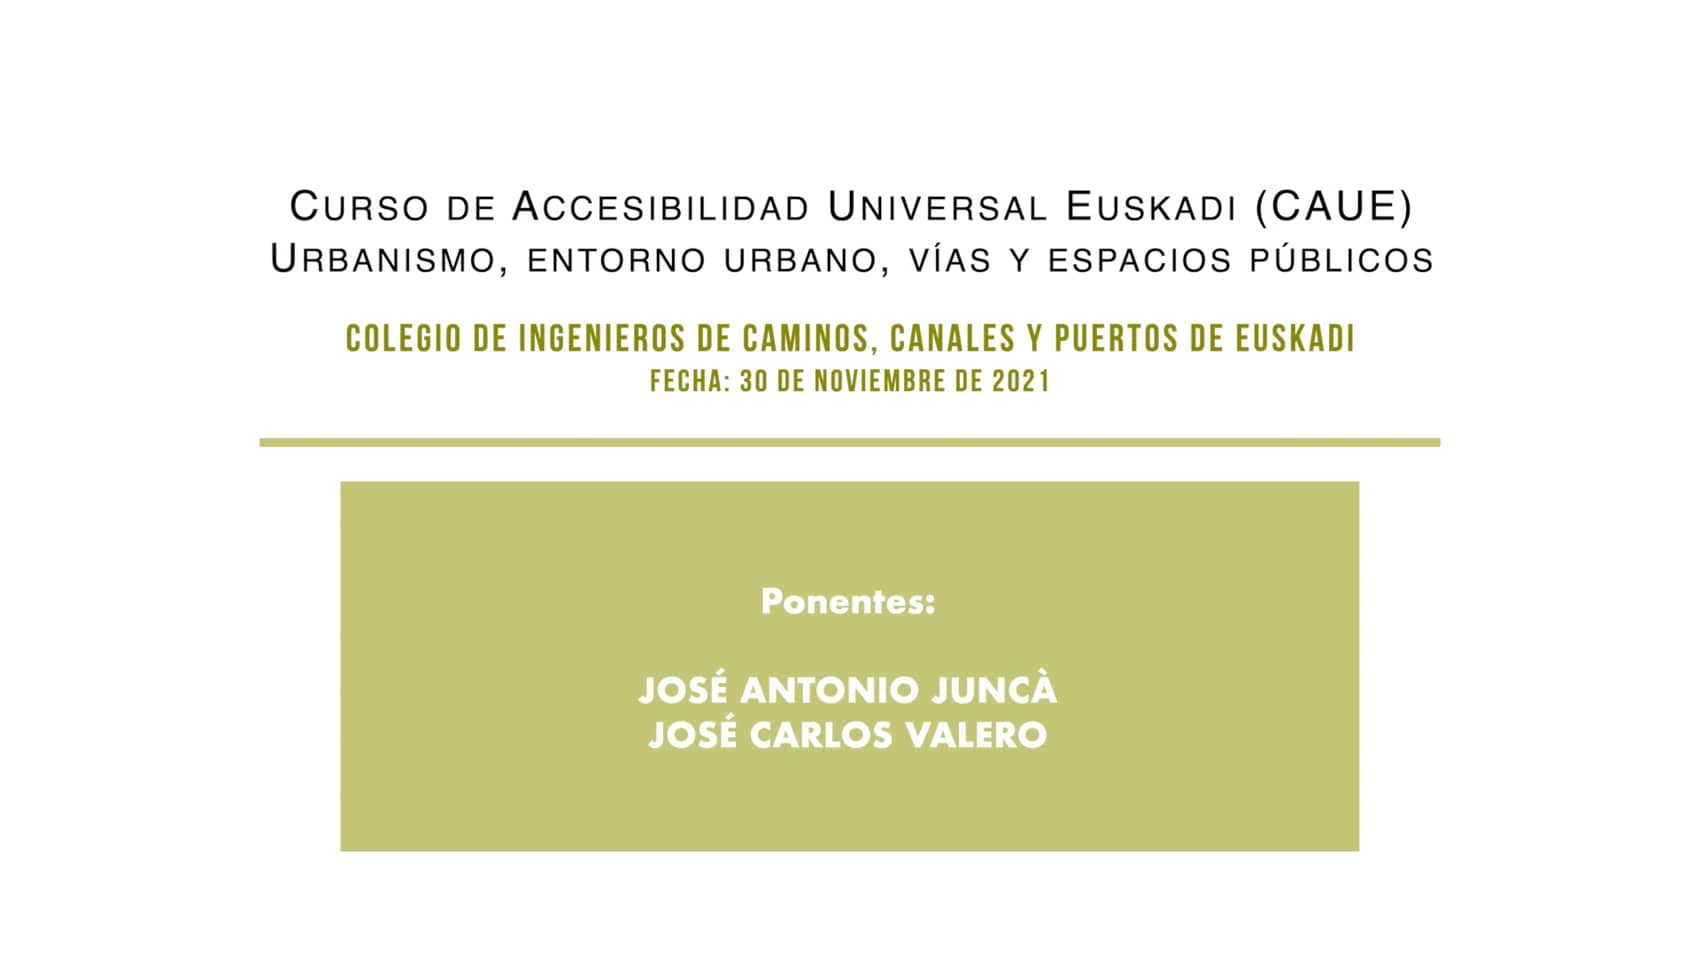 Sesión 15 (30-11-21) Urbanismo, entorno urbano, vías y espacios públicos